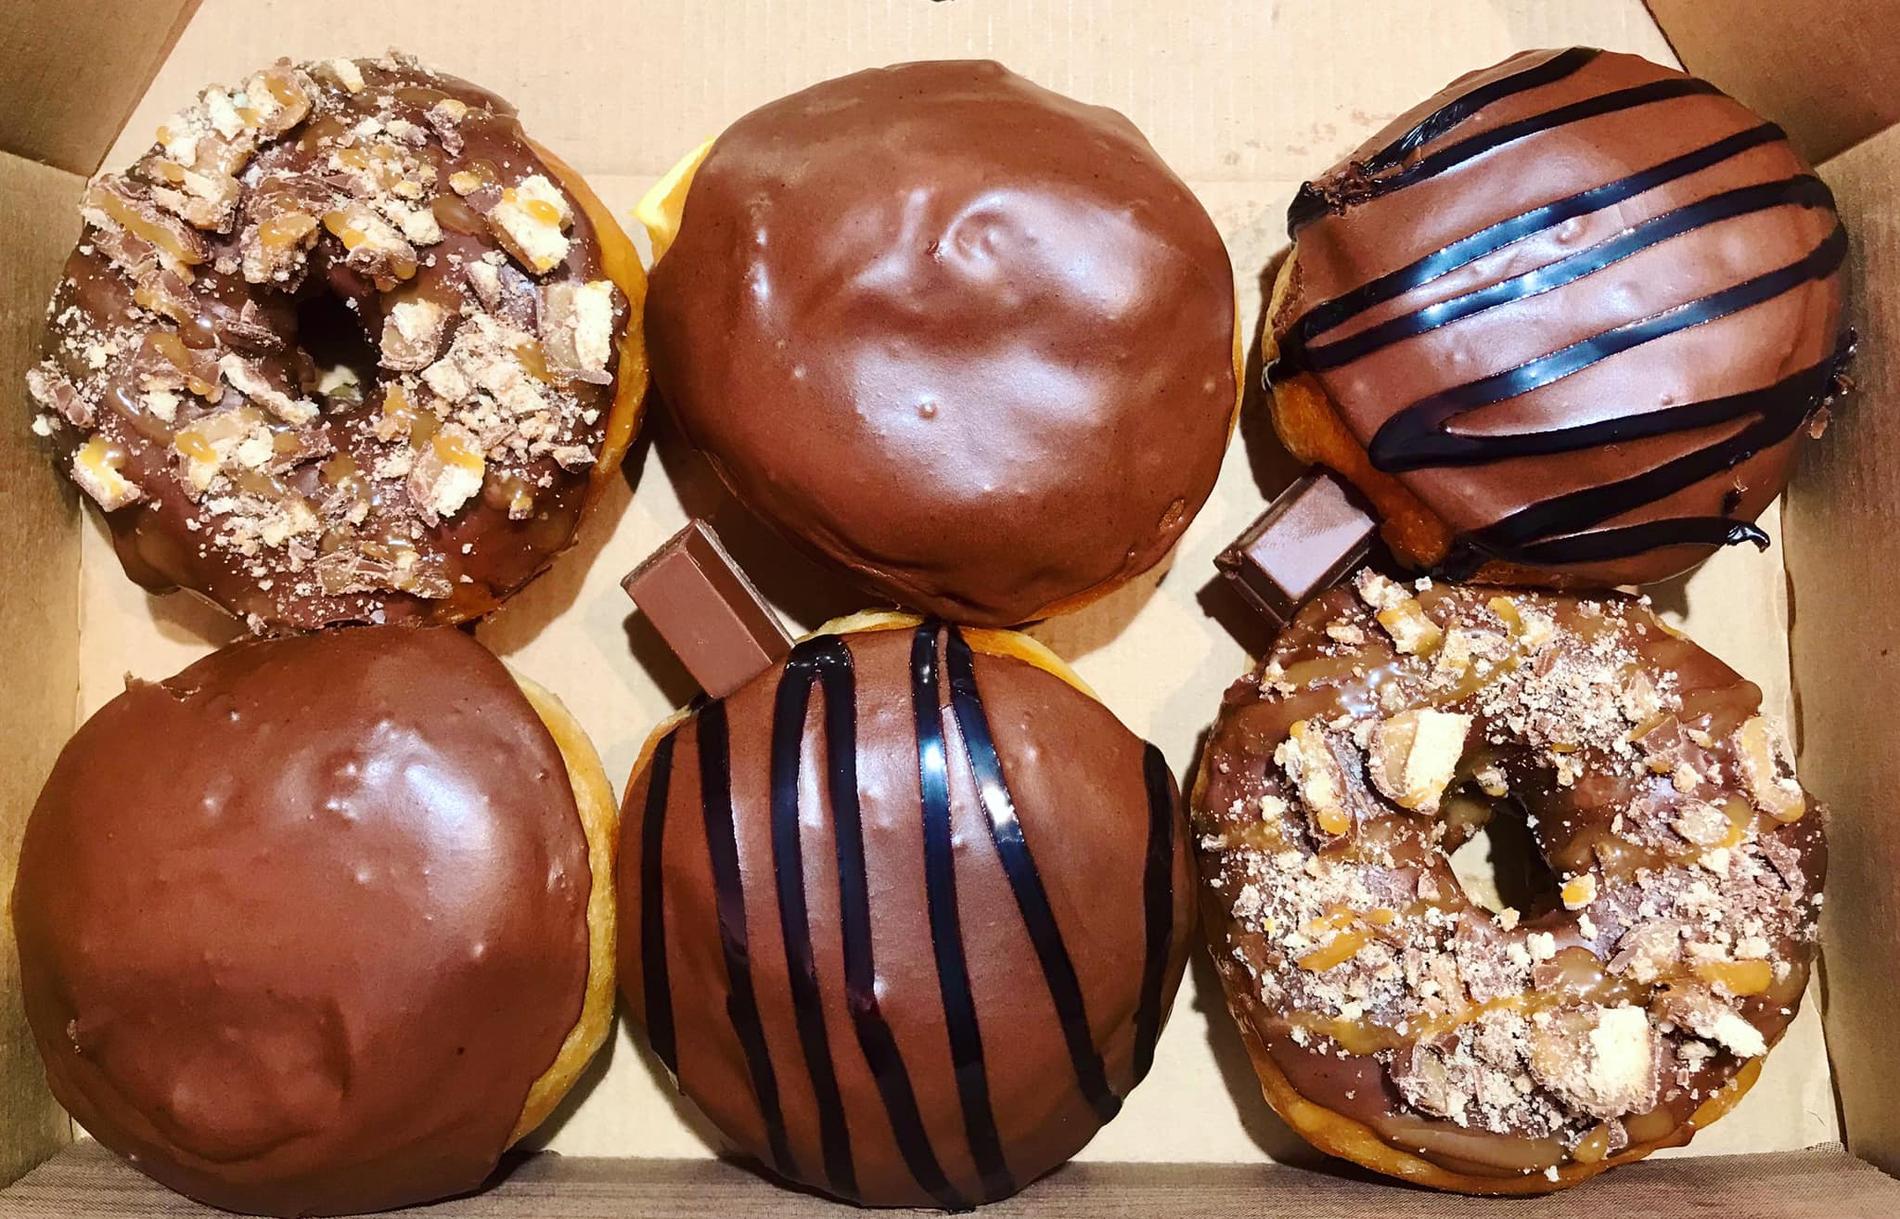 Jensen forteller at de baserer donutene sine på Dunkin’ Donuts, og har blitt fortalt at de smaker tilnærmet likt. 